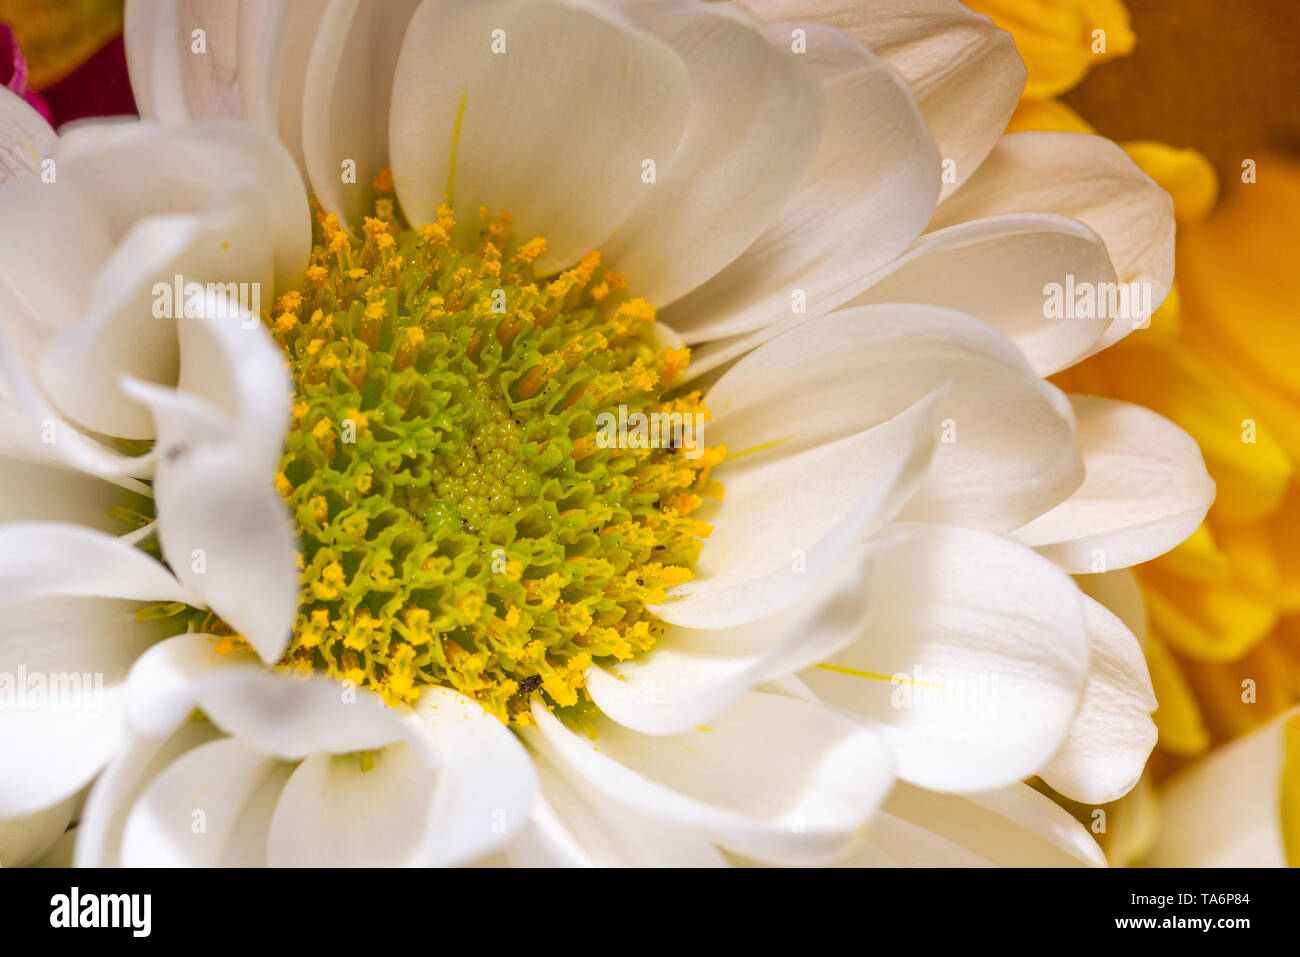 Cierre horizontal-foto de flor en flor. Bloom tiene centro amarillo brillante lleno de pistilos y estigmas. Tiene bonitas hojas de pétalos de color blanco. Foto de stock